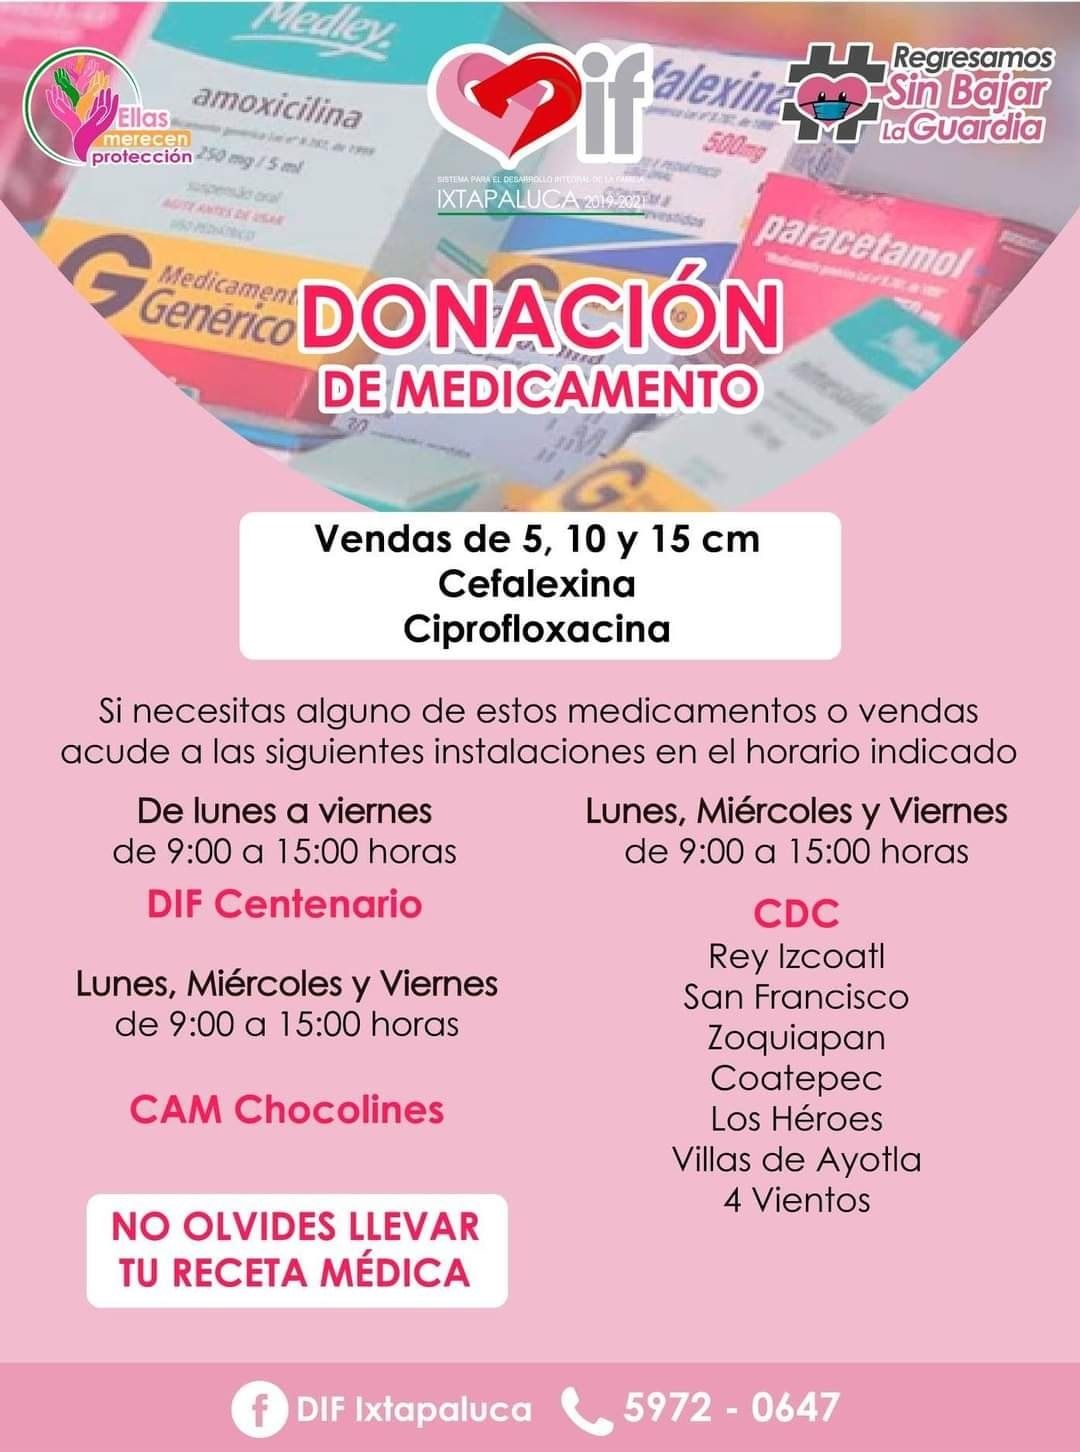 
Ofrece DIF Ixtapaluca medicamento gratuito y vacunas por parte de DIF